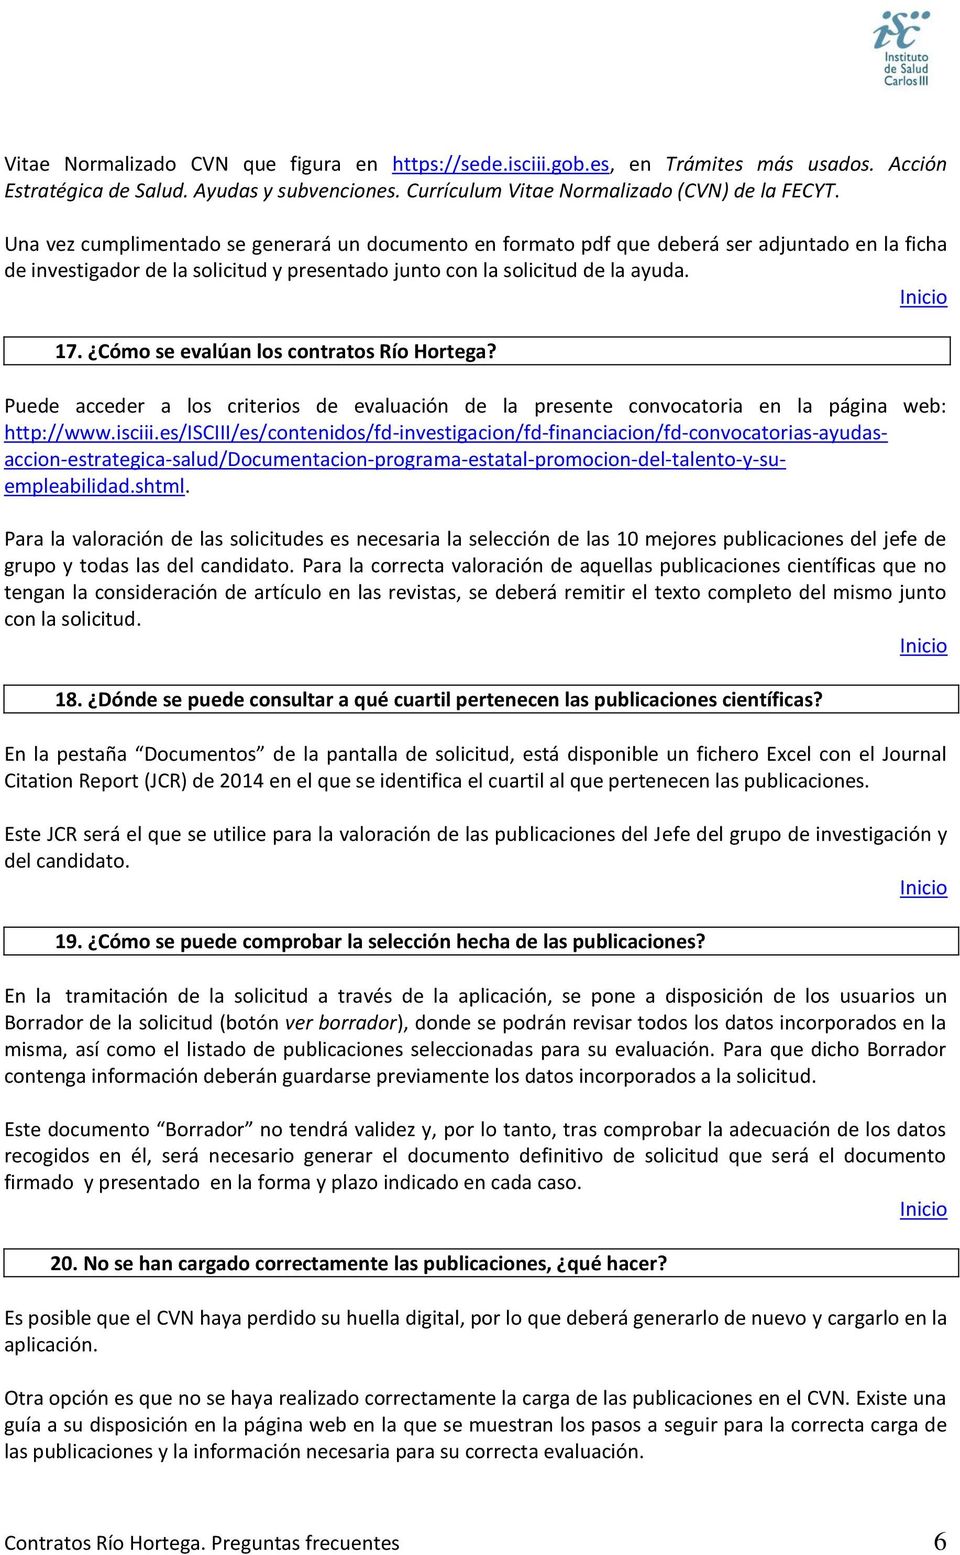 Cómo se evalúan los contratos Río Hortega? Puede acceder a los criterios de evaluación de la presente convocatoria en la página web: http://www.isciii.